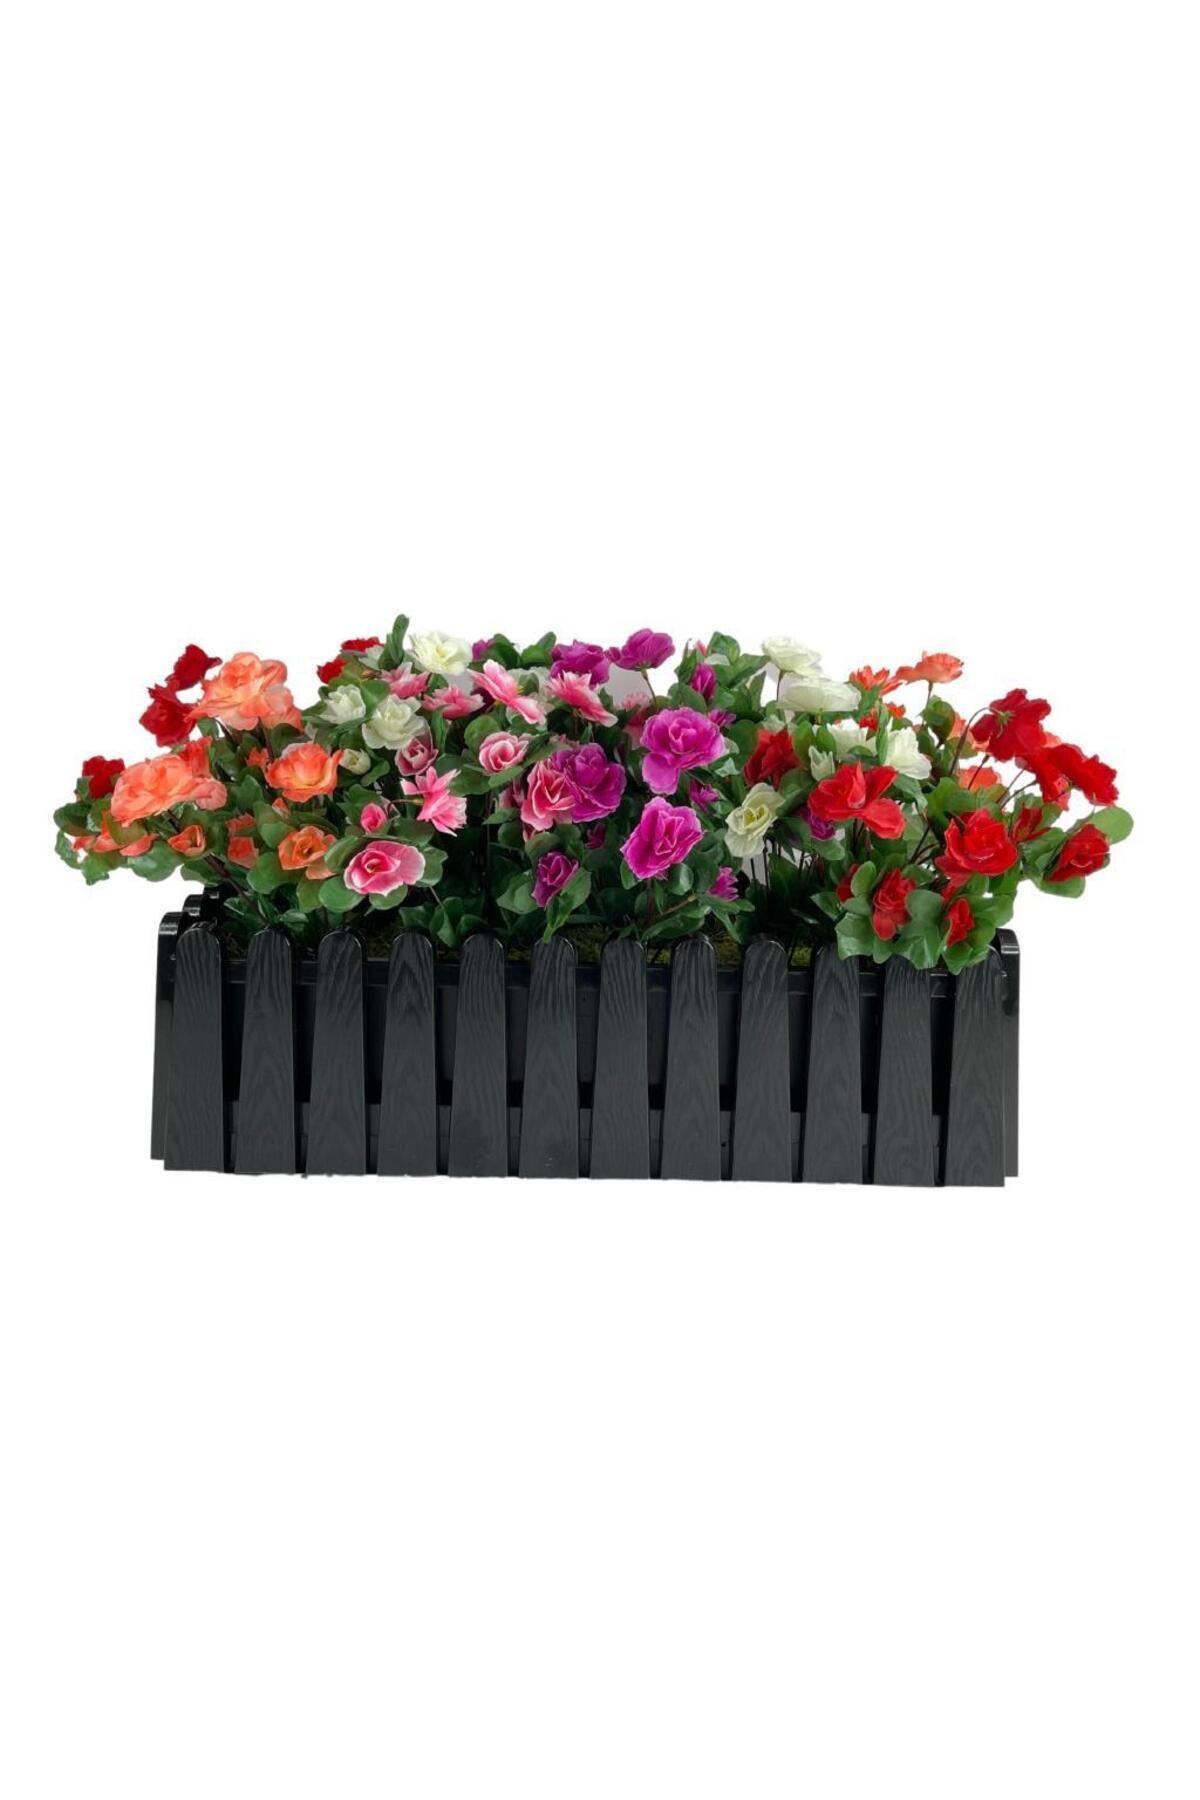 Nettenevime Yapay Çiçek Siyah Çit Balkon Saksısı Renkli Açelya Çiçekli 55*20cm